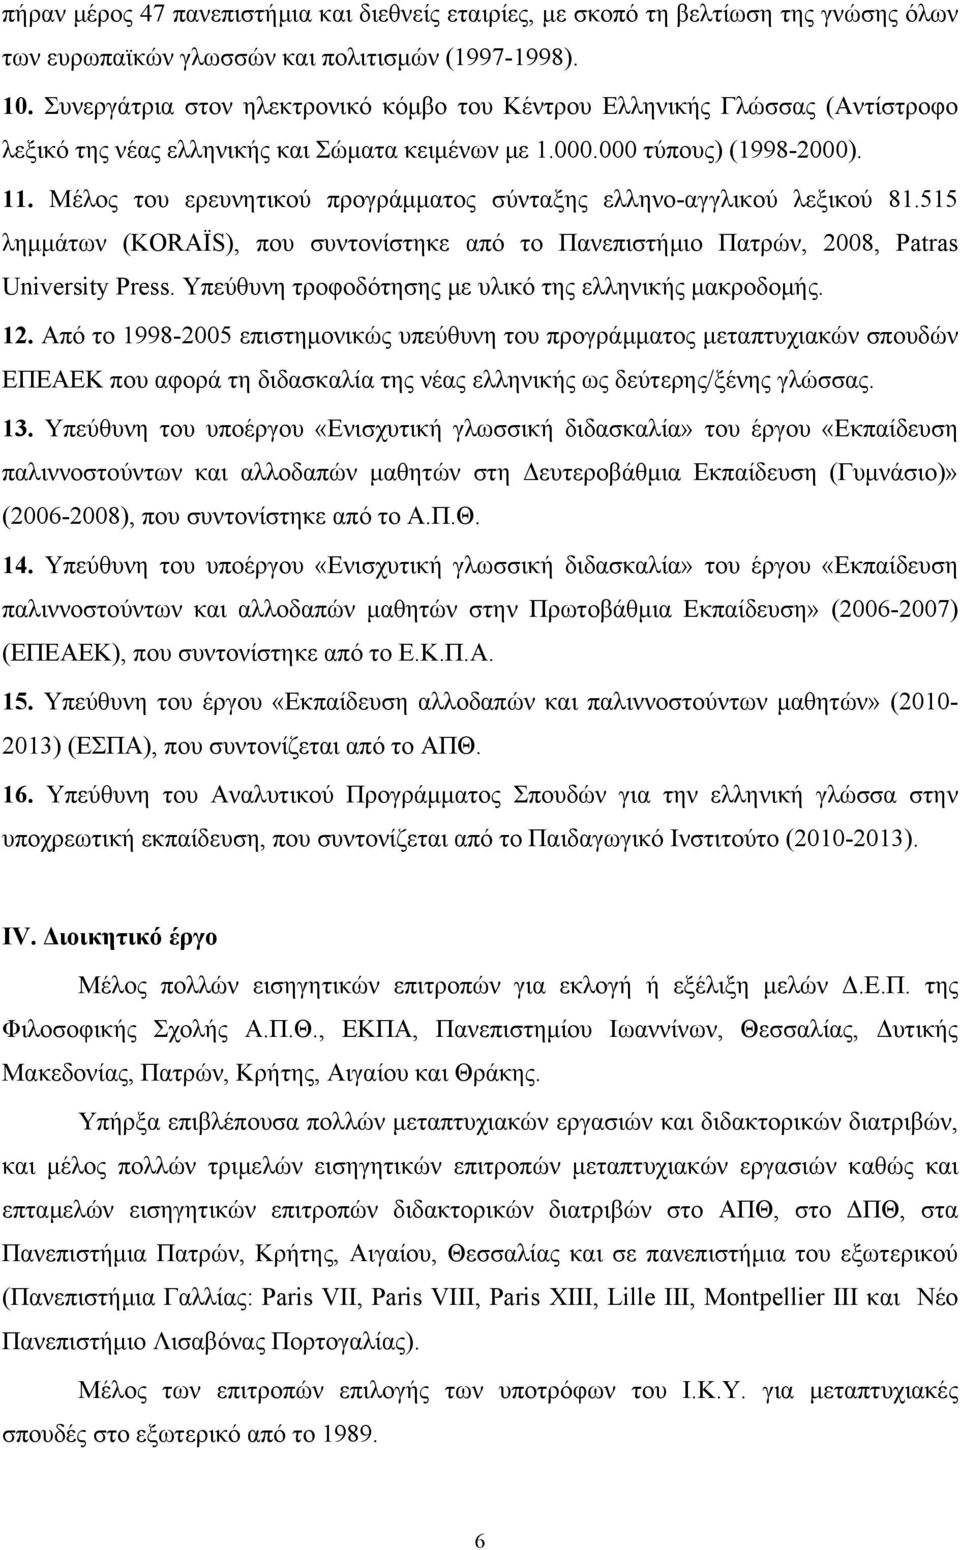 Μέλος του ερευνητικού προγράμματος σύνταξης ελληνο-αγγλικού λεξικού 81.515 λημμάτων (KORAÏS), που συντονίστηκε από το Πανεπιστήμιο Πατρών, 2008, Patras University Press.